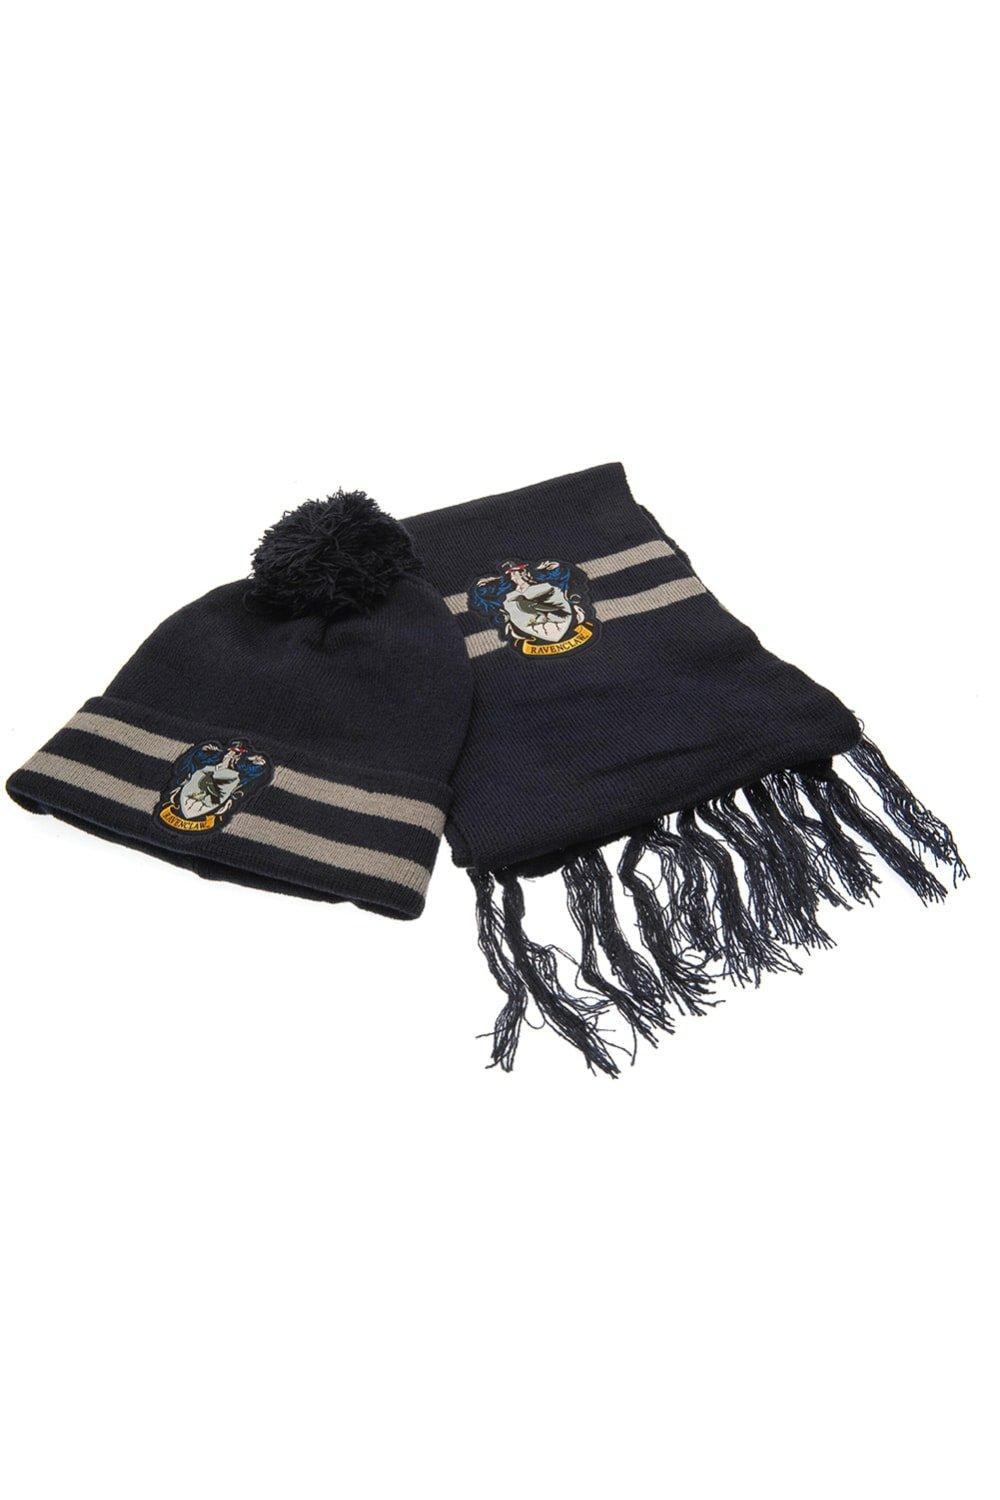 Комплект шляпы и шарфа Рейвенкло Harry Potter, темно-синий качалка milly swing полоса